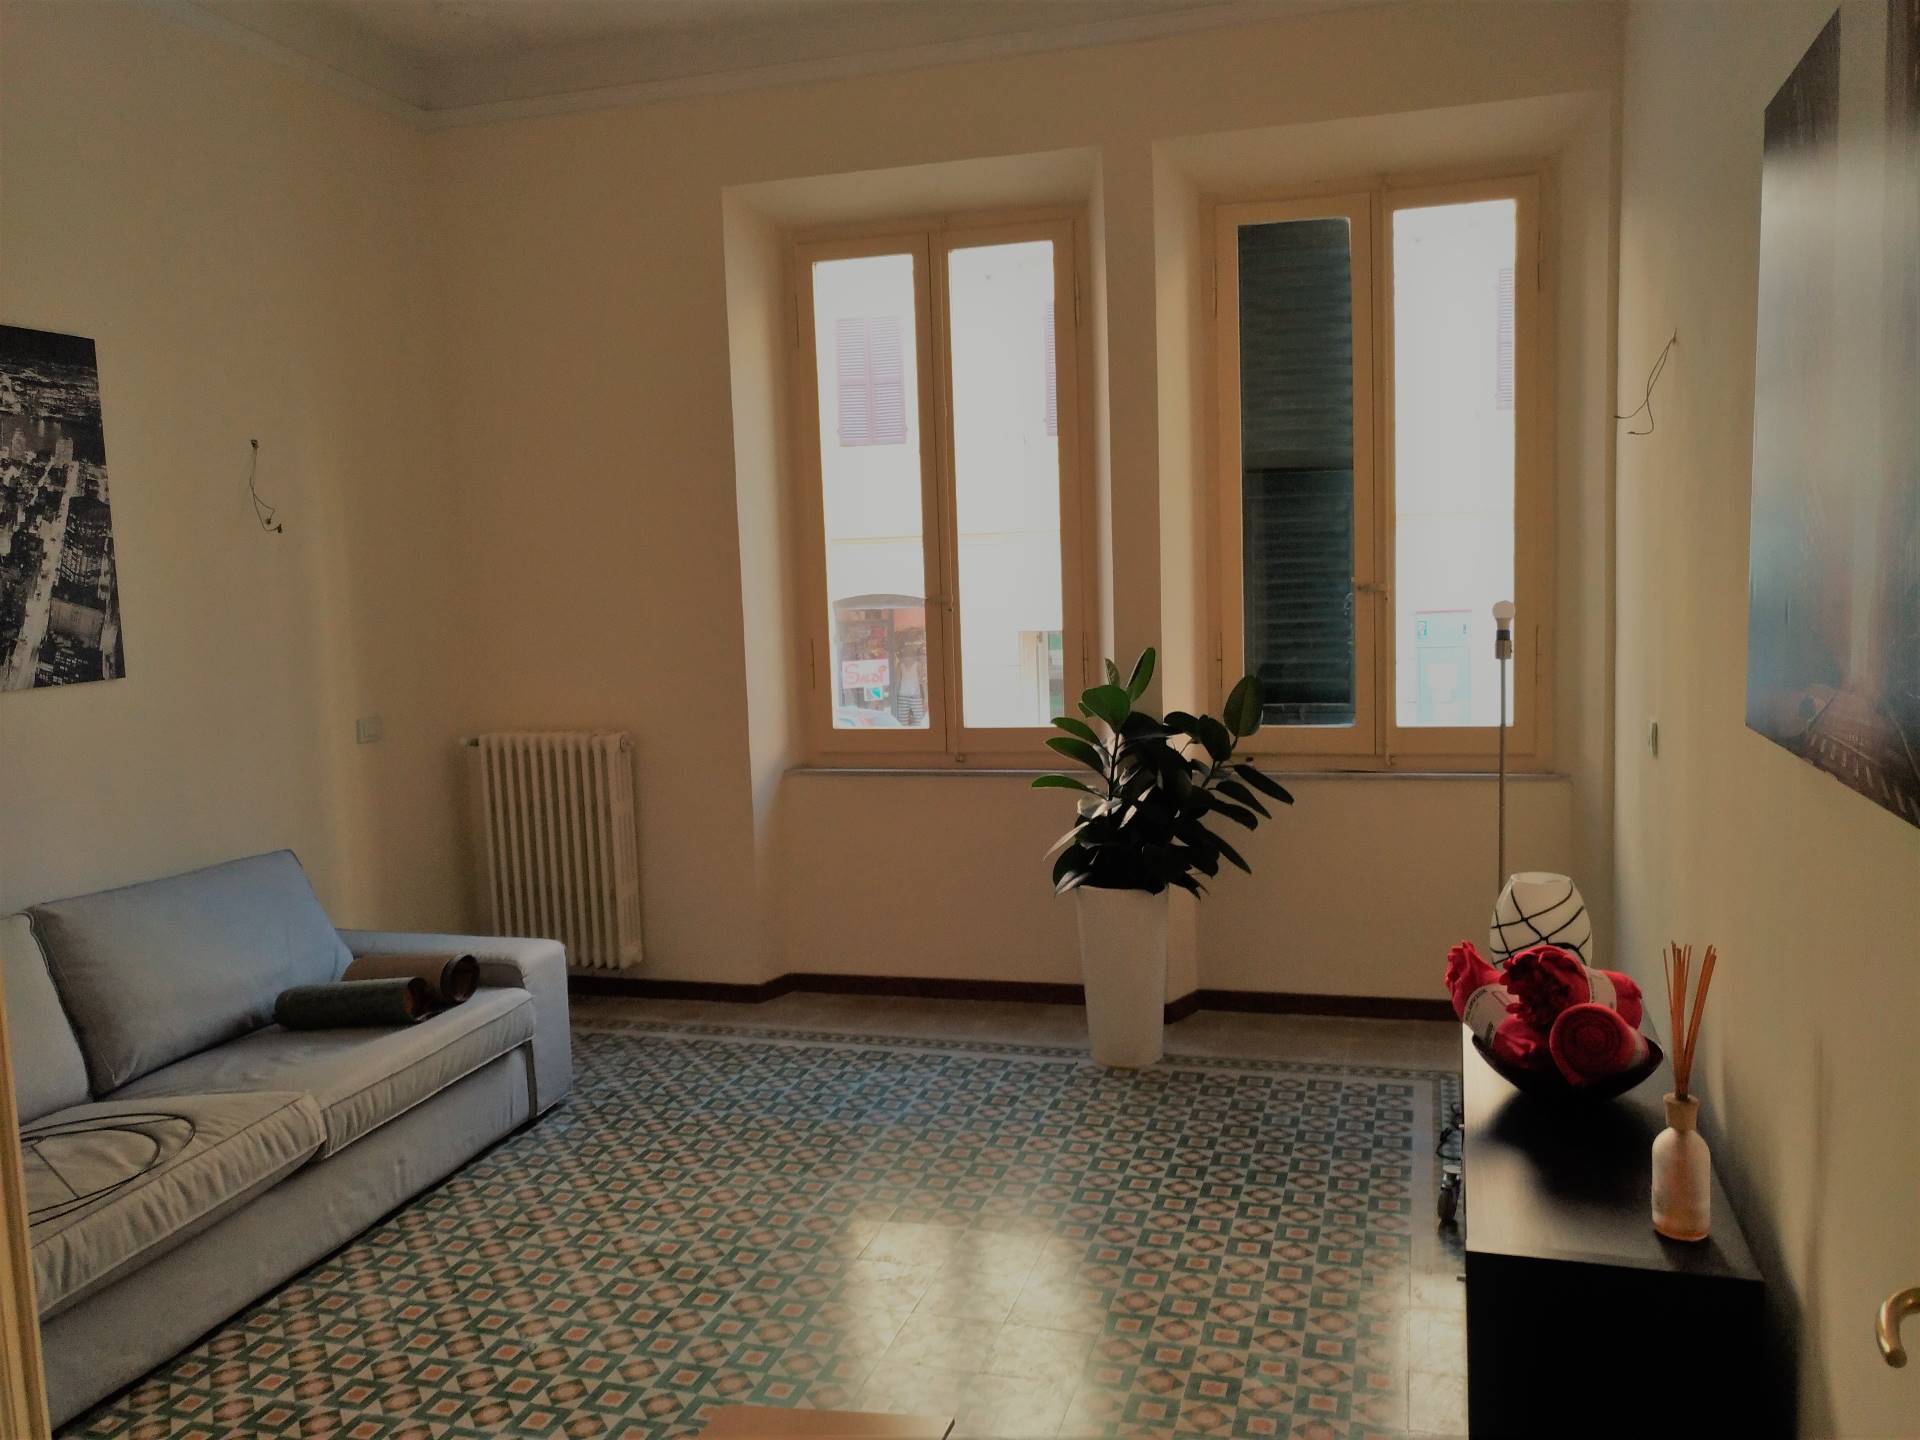 Appartamento arredato in affitto, Ancona q. adriatico